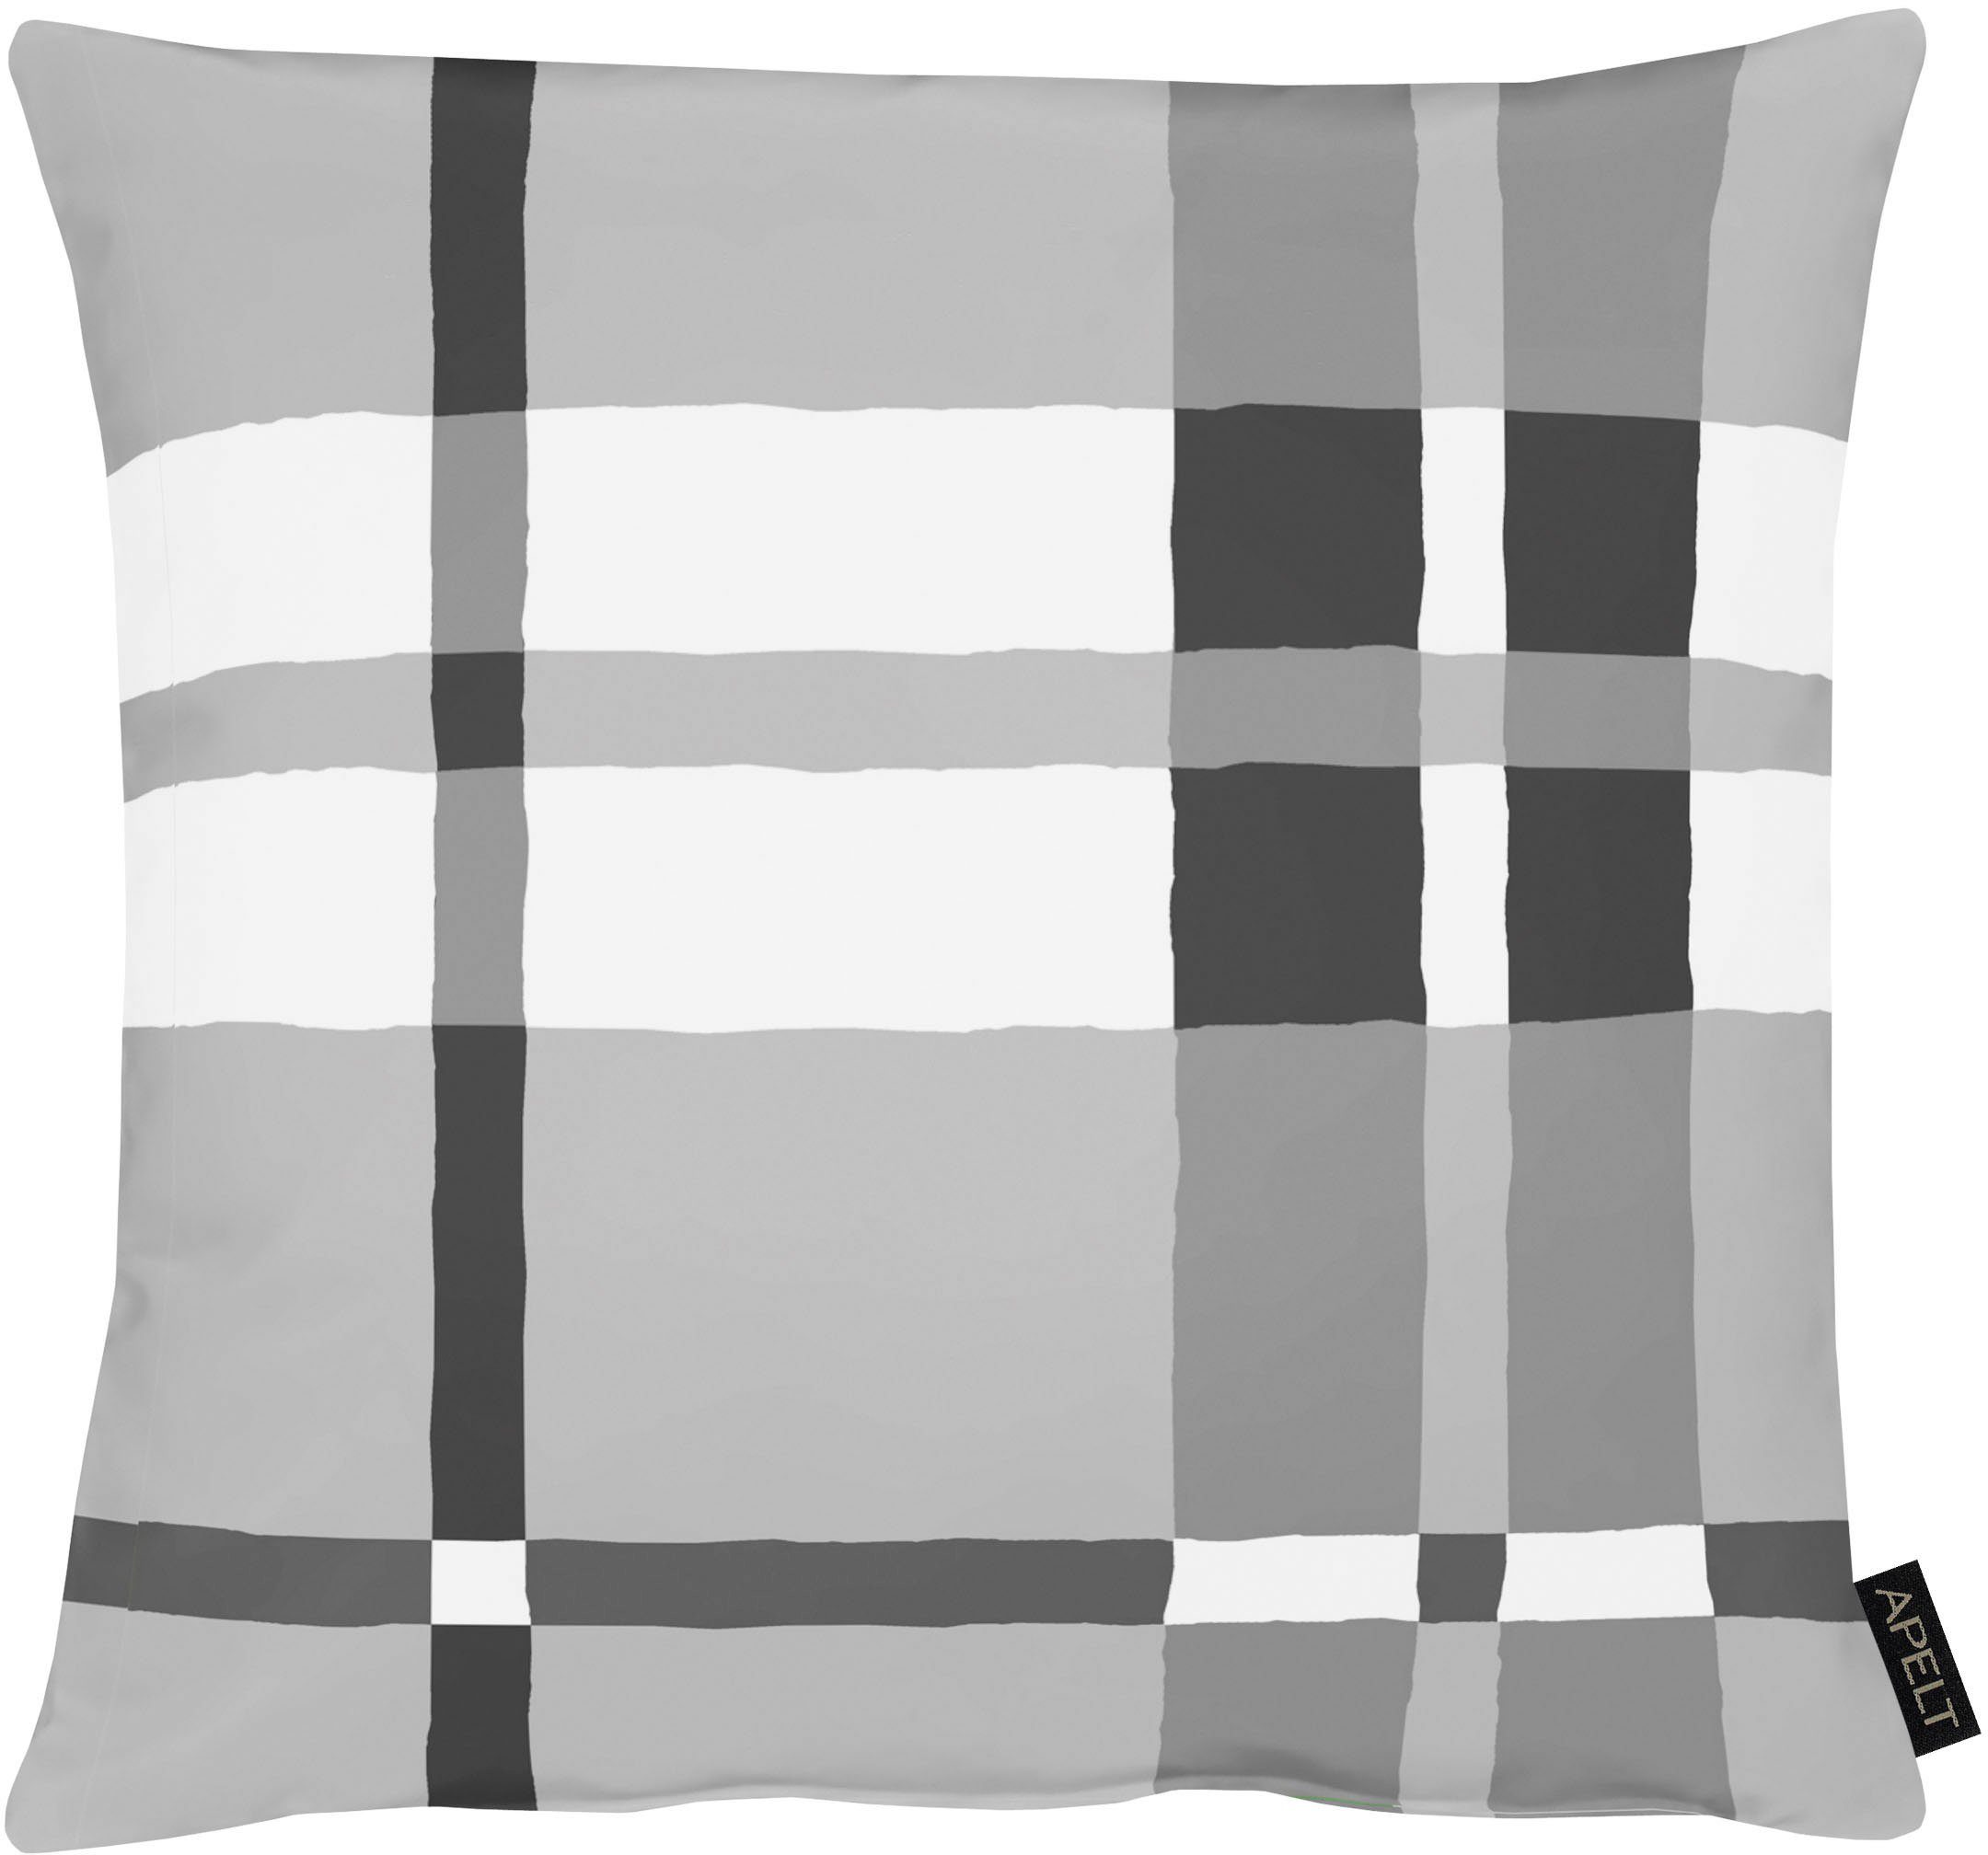 APELT Dekokissen Ray, im Bauhaus-Stil, Kissenhülle ohne Füllung, 1 Stück grau/weiß/schwarz